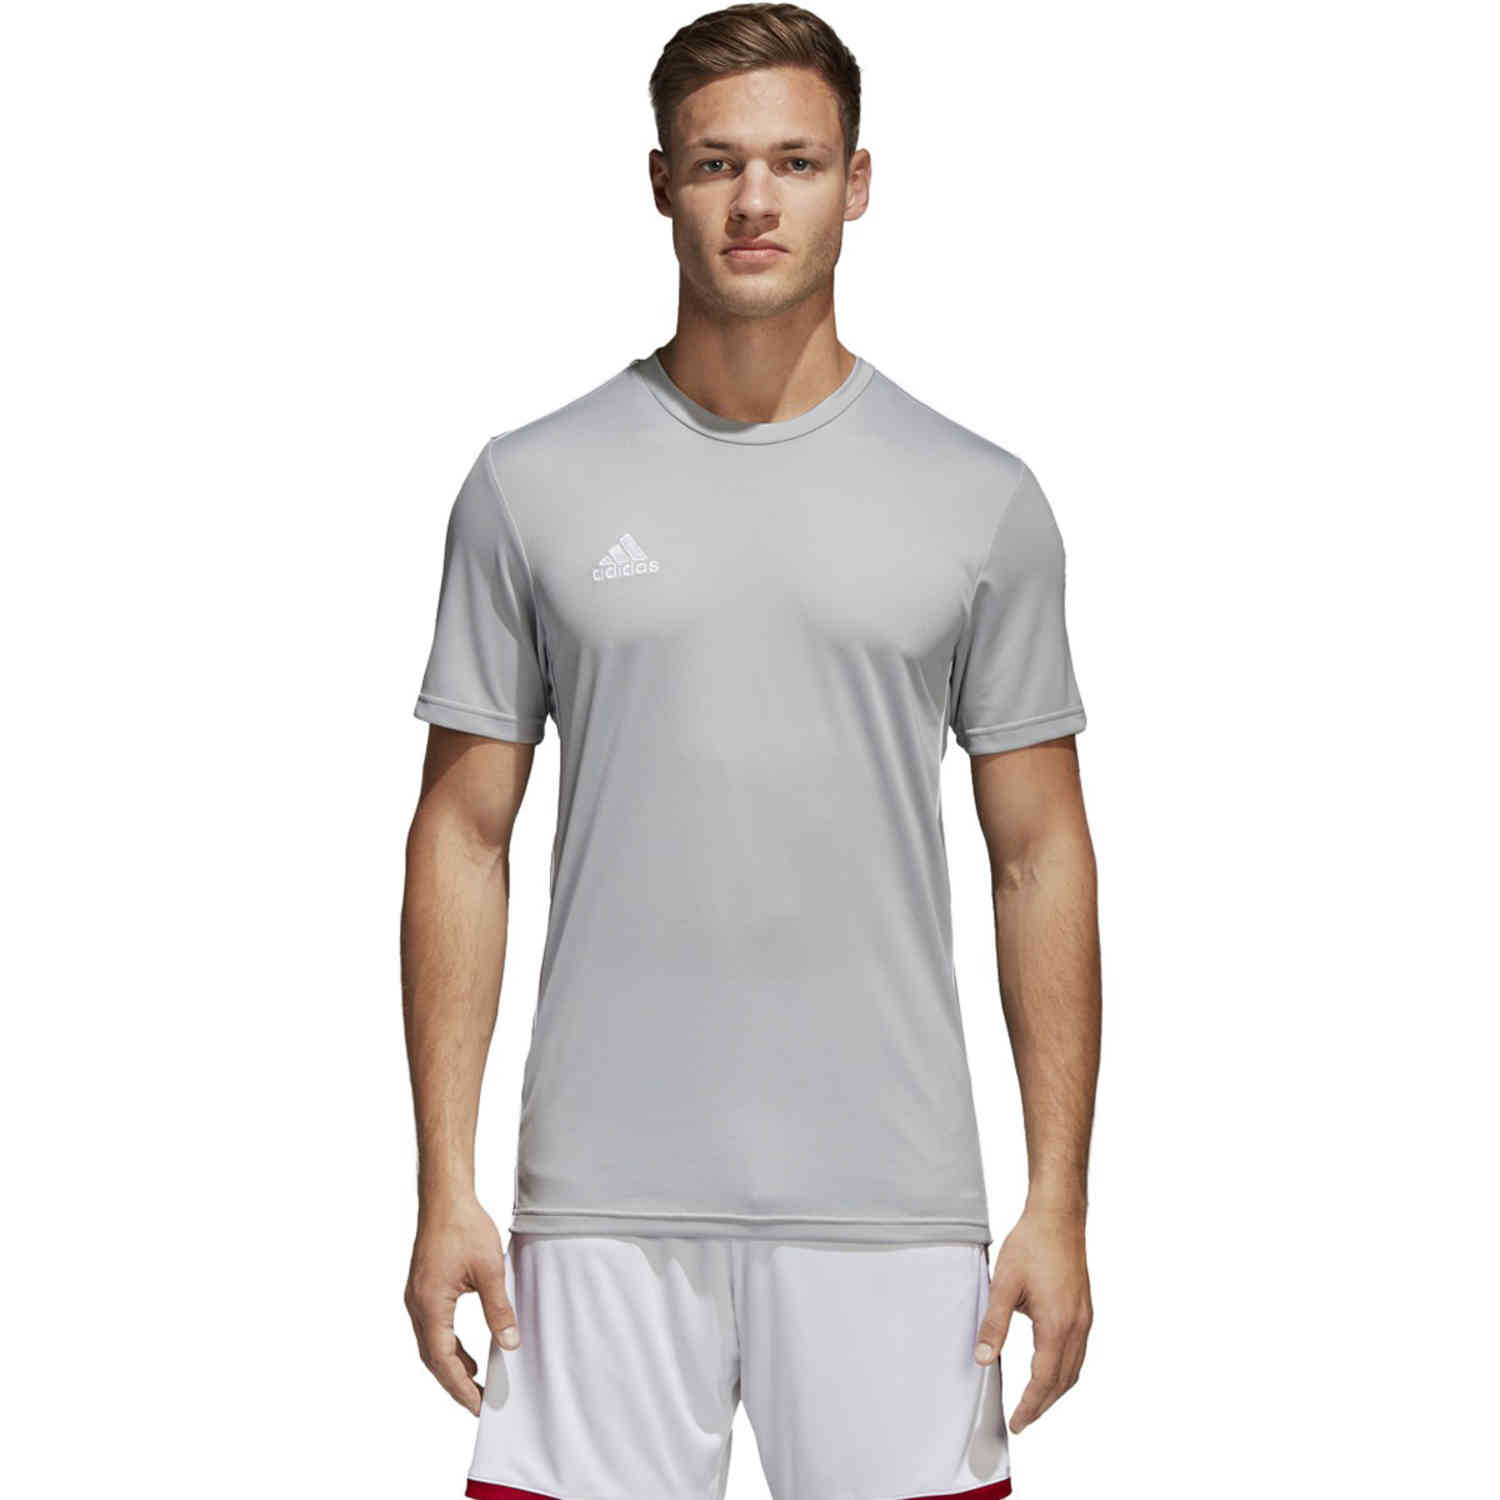 adidas Core 18 Training Jersey - Stone/White - SoccerPro